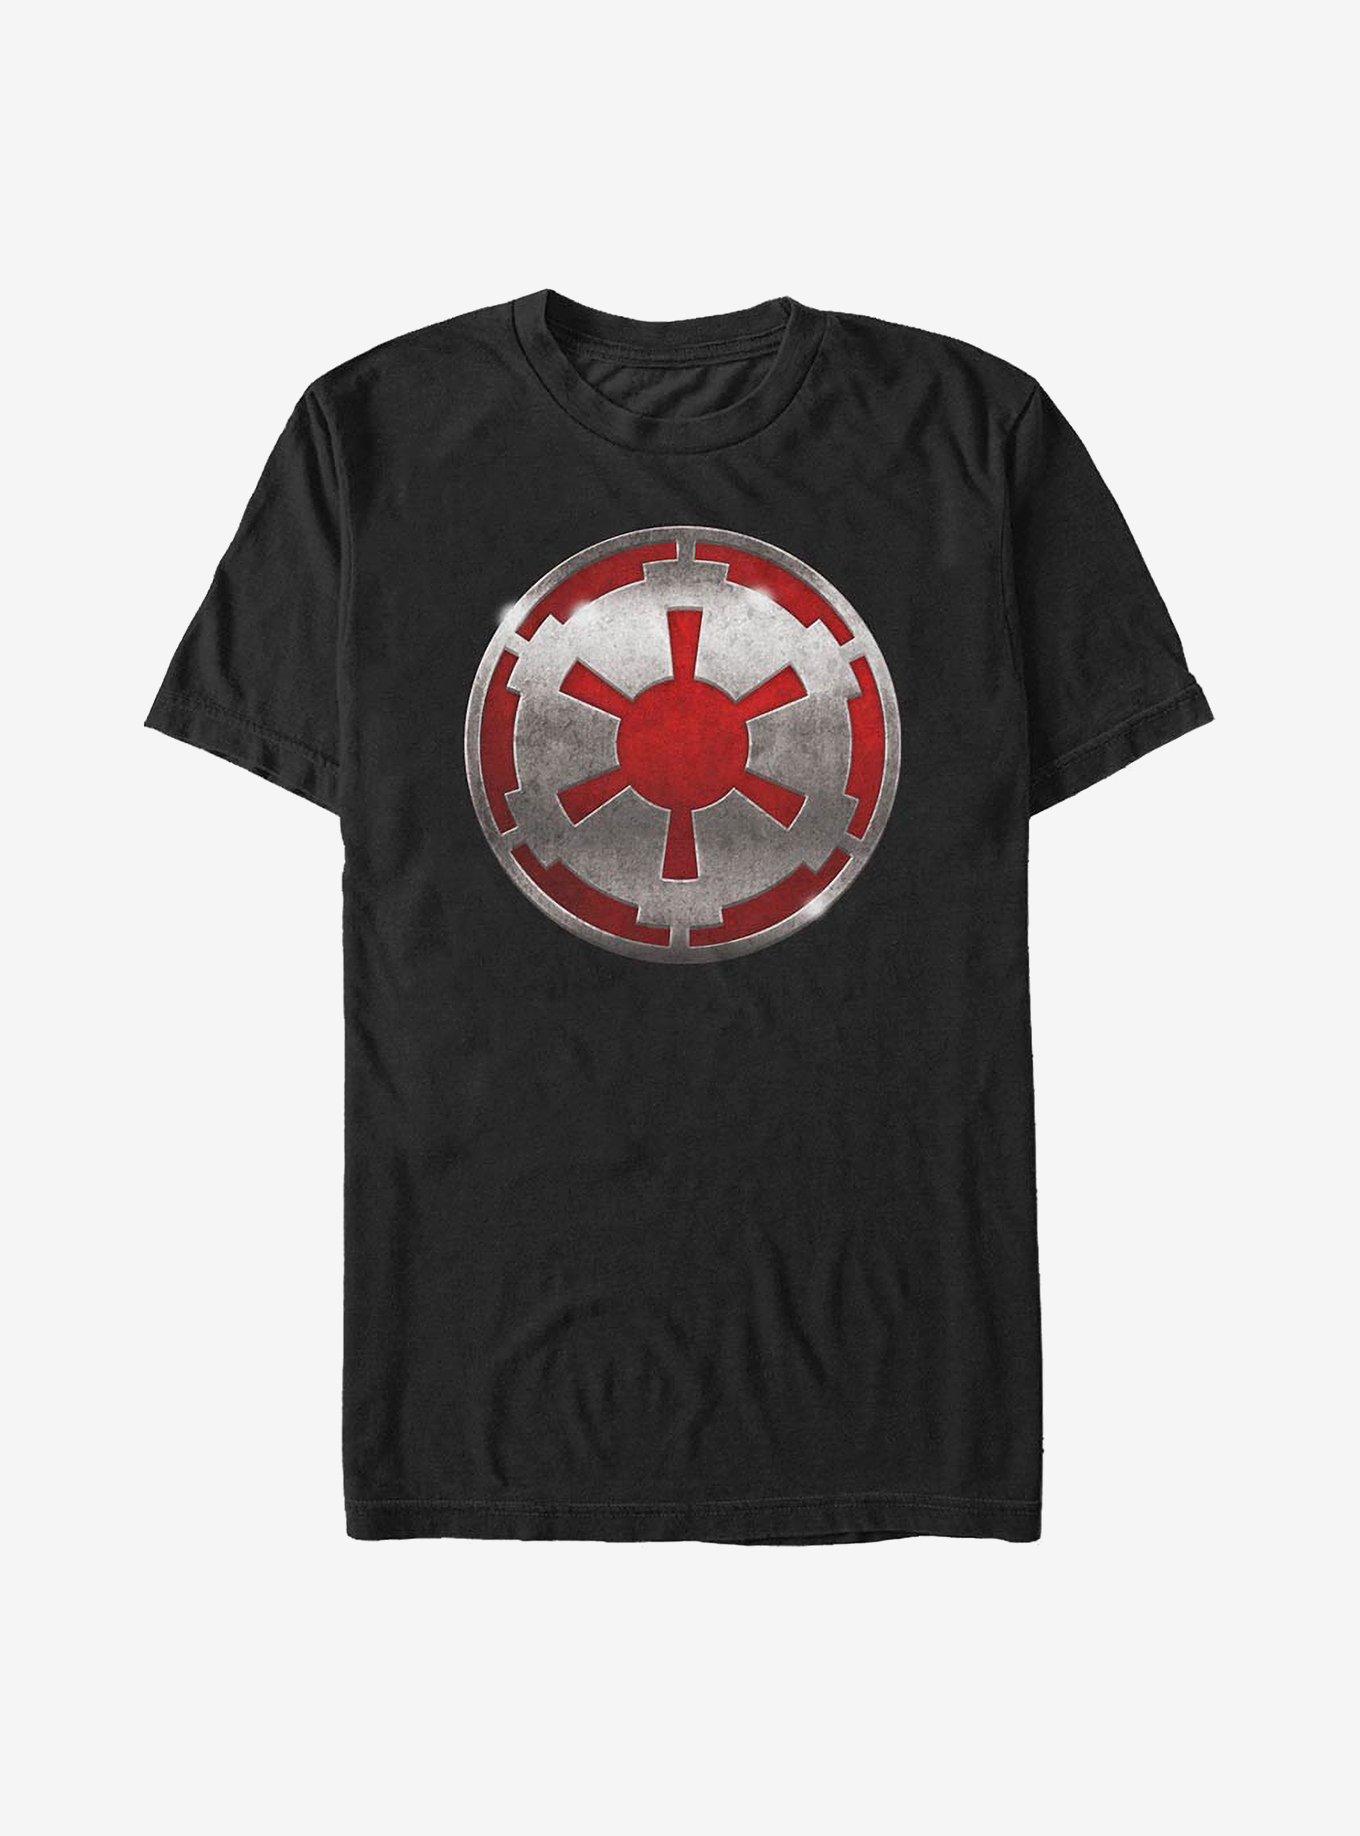 Star Wars Tarnished Emblem T-Shirt, BLACK, hi-res